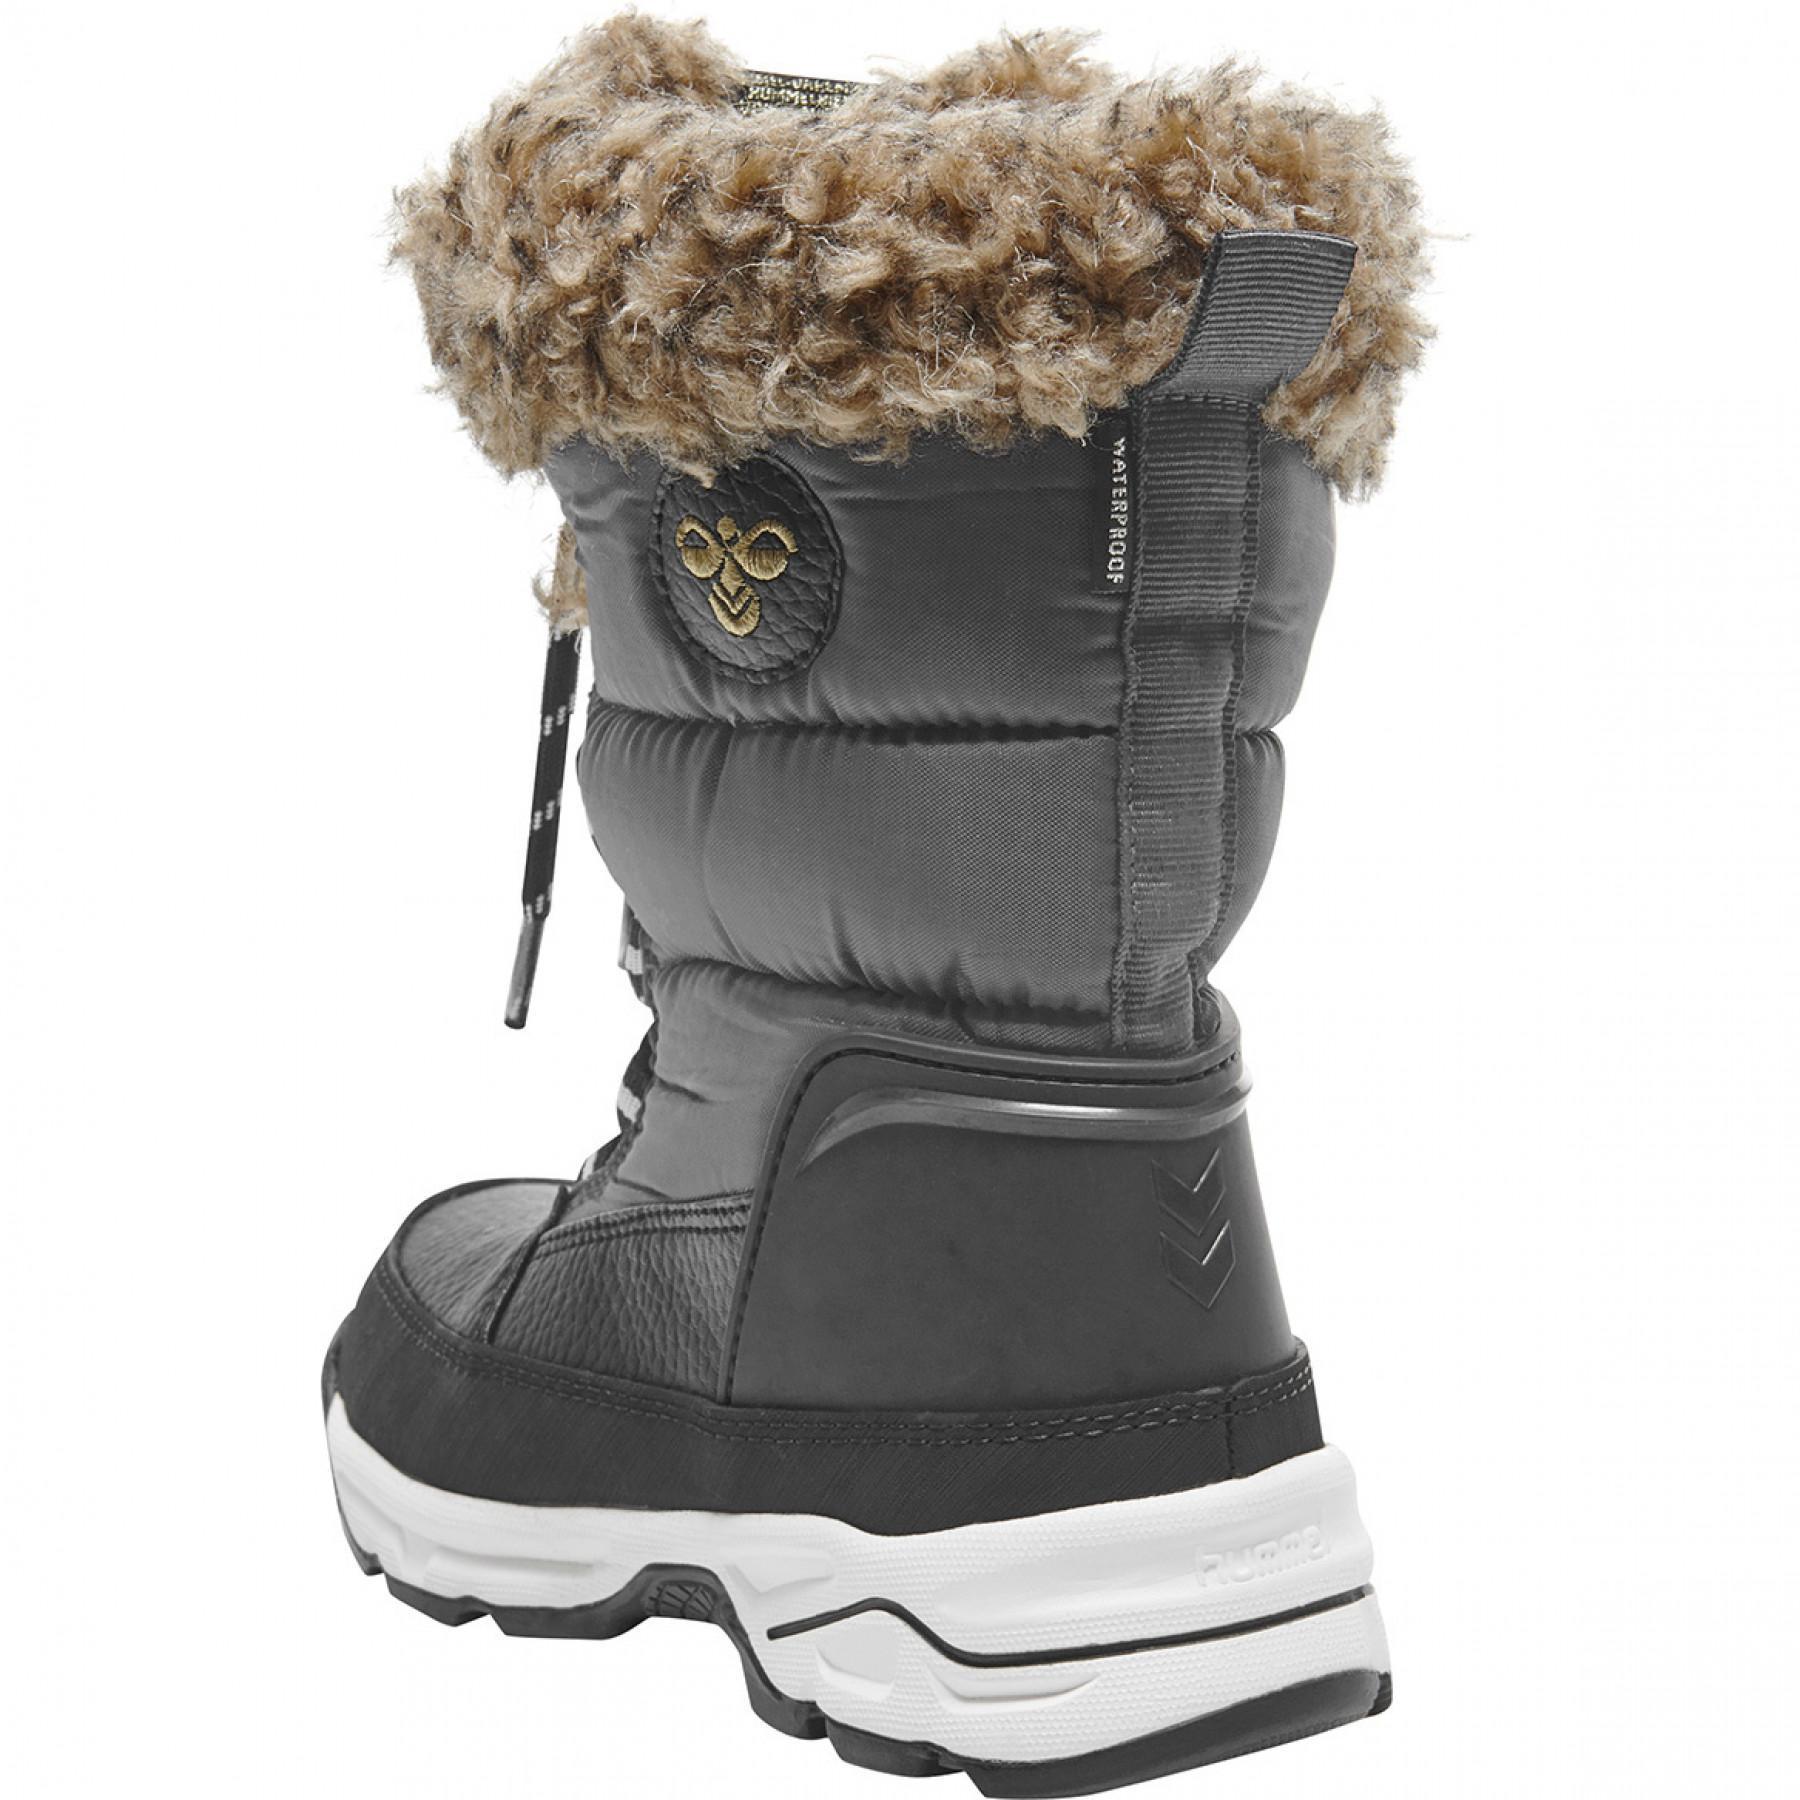 Formadores de crianças Hummel snow boot